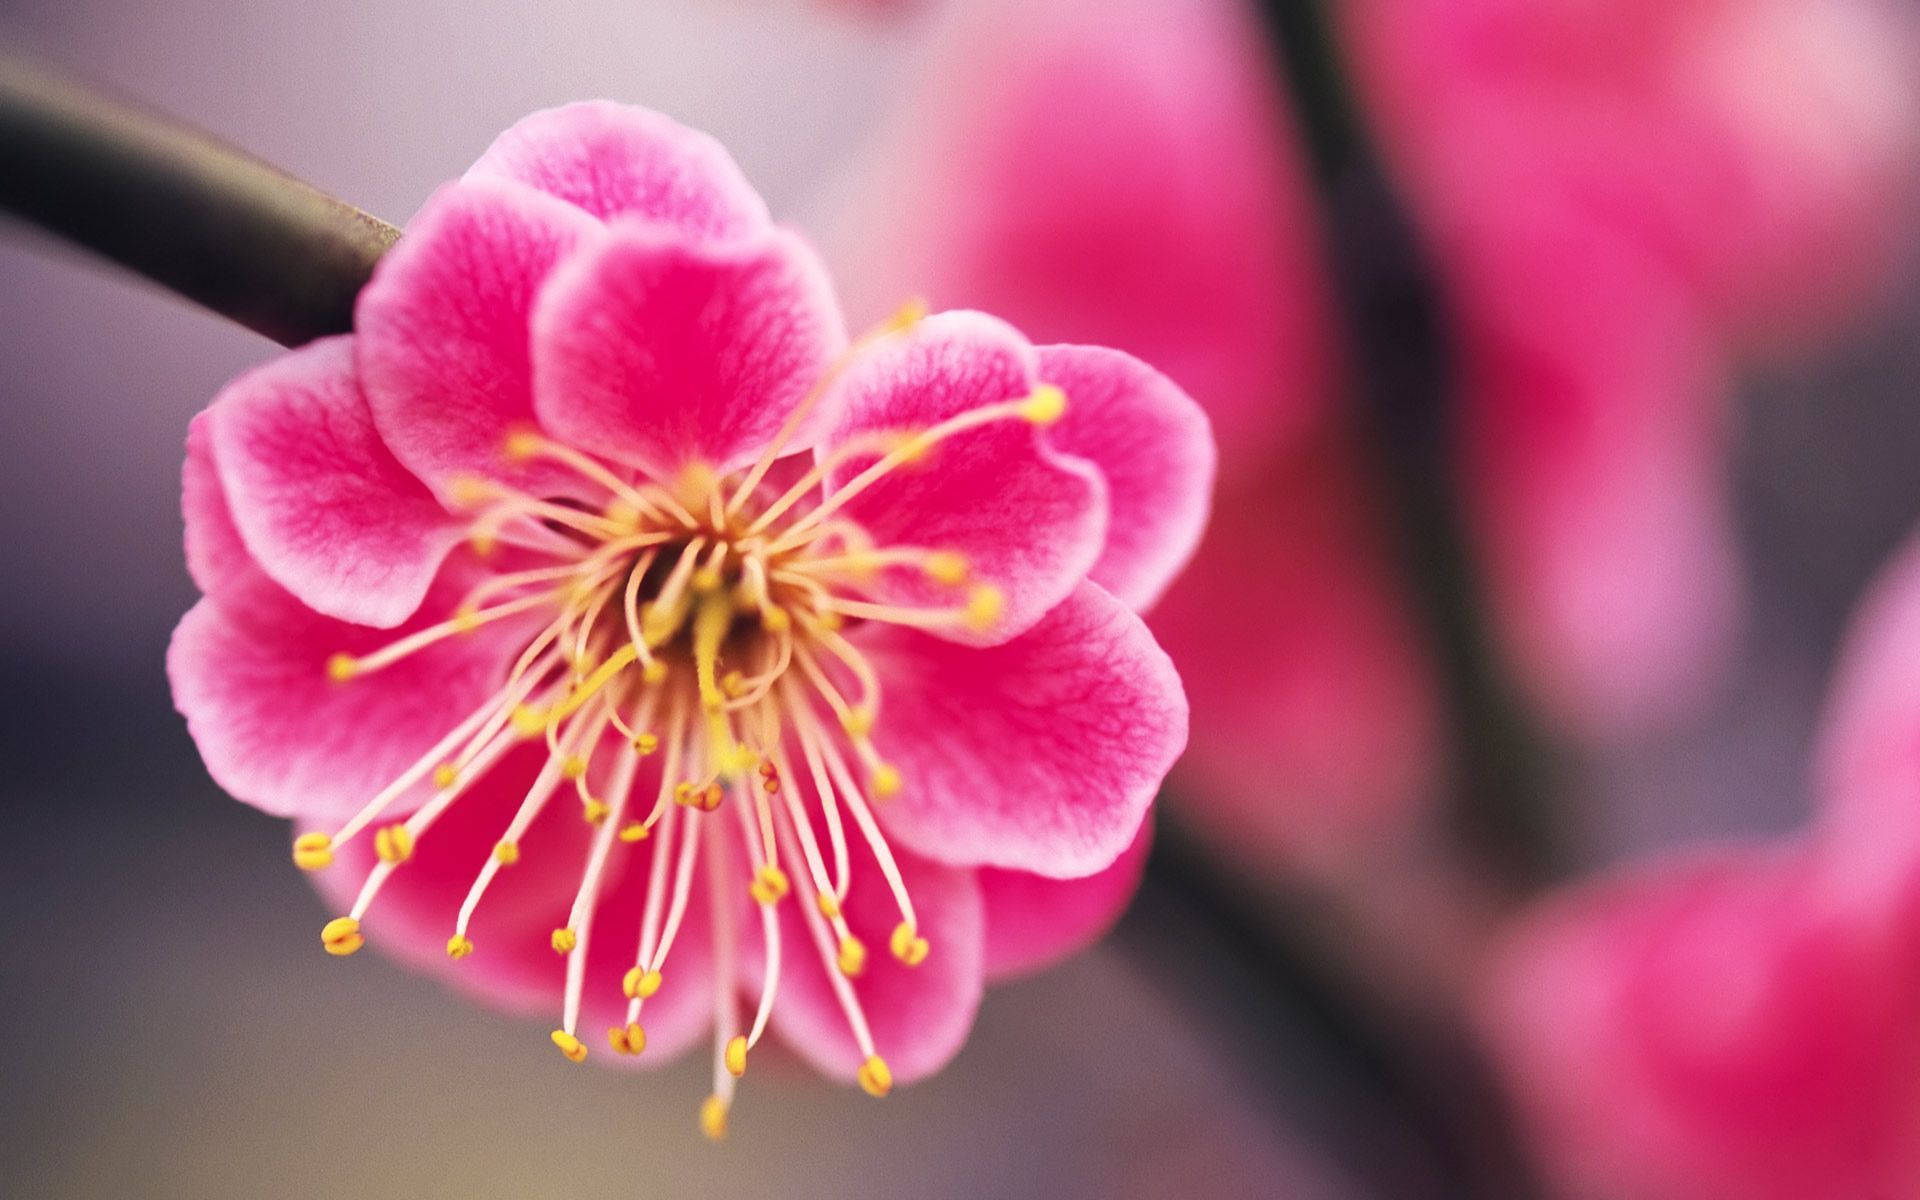 Cute Pink Flower Of Plum Tree